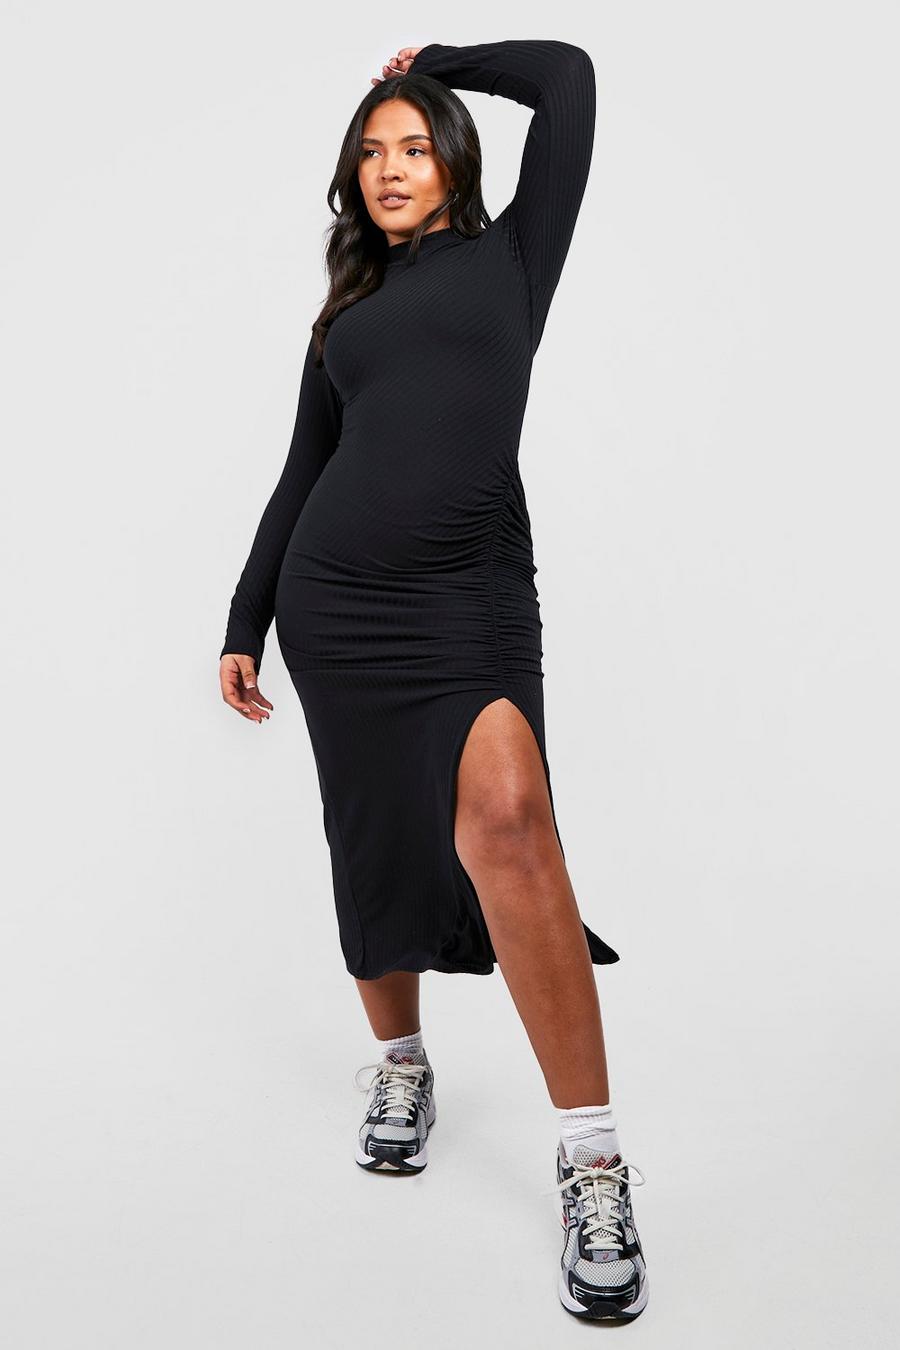 Plus Size Bodycon Dresses | Plus Size Bandage Dresses | boohoo UK